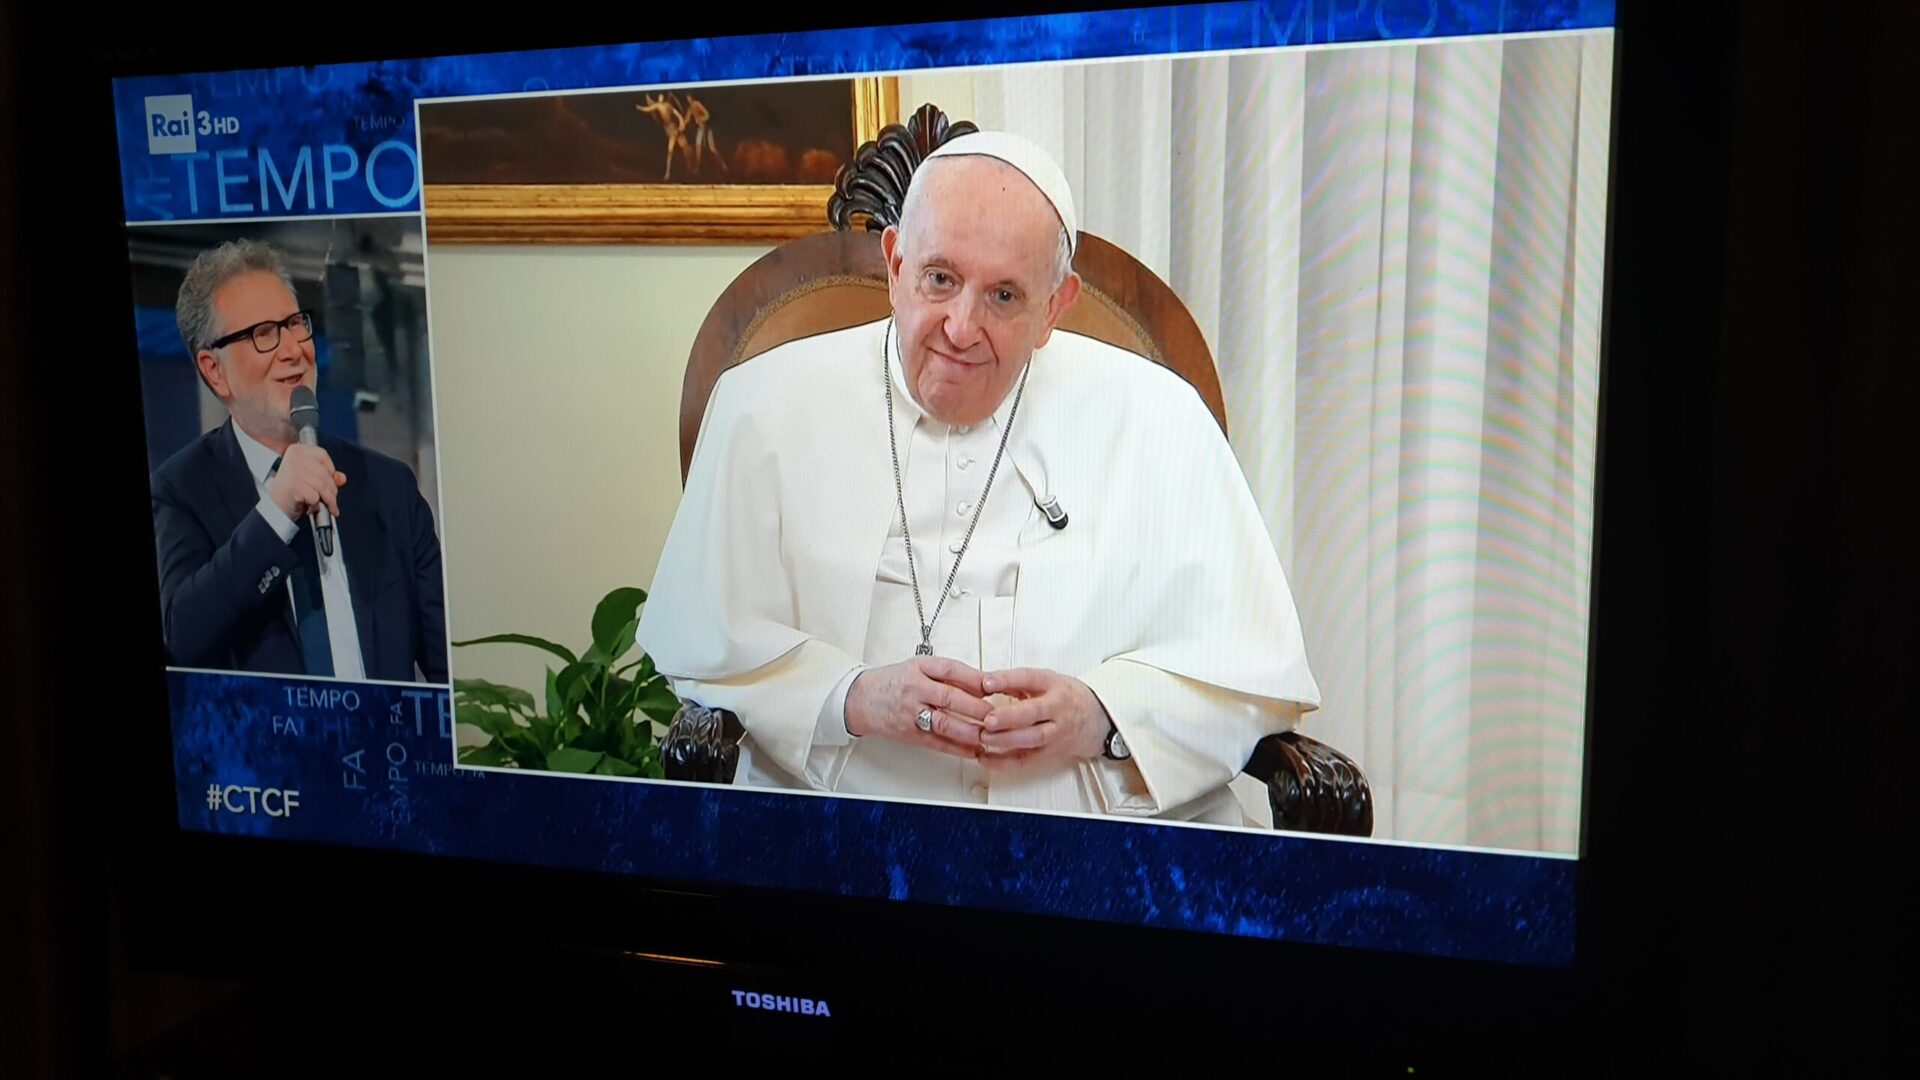 Le pape François interviewé par le journaliste Fabio Fazio durant le talk-show de RAI 3 - une première pour un pontife | © Cristina Vonzun